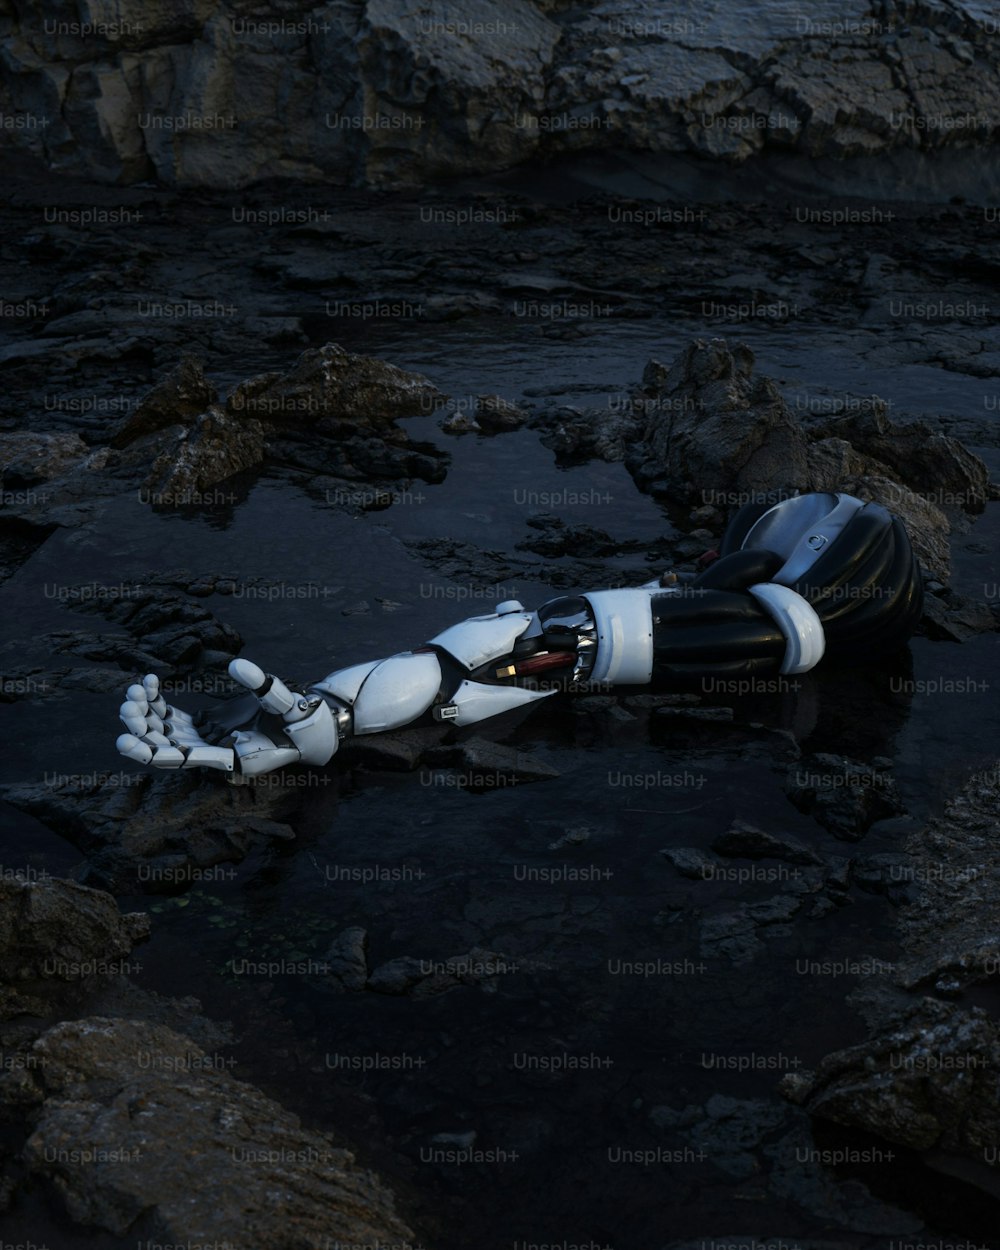 Un robot è posato sulle rocce nell'acqua